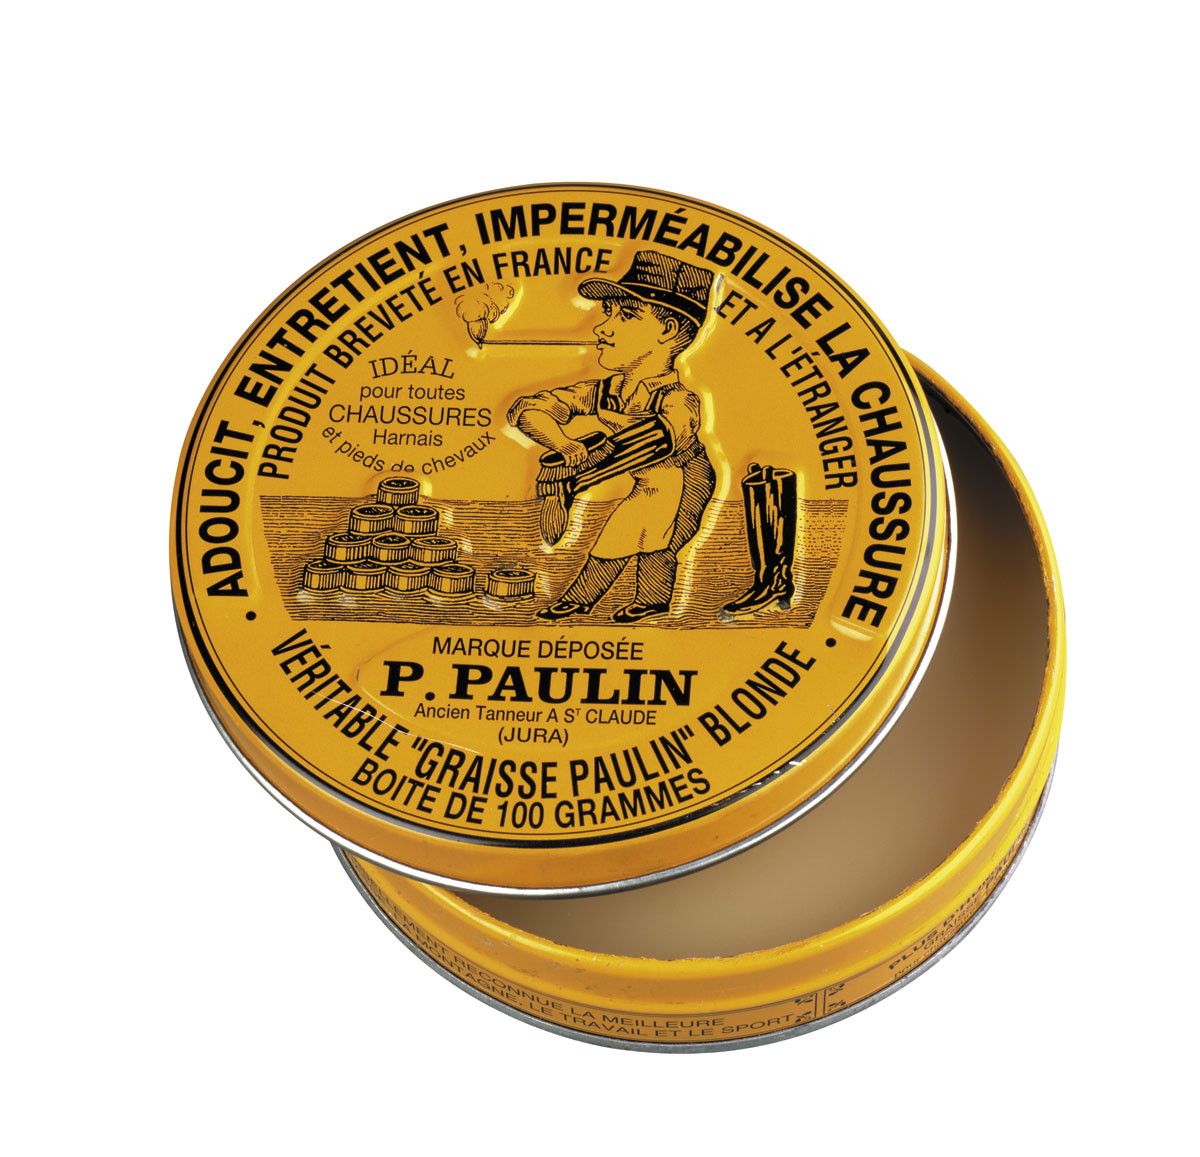 Graisse-PAULIN -Blonde - Pour tous cuirs et sellerie-Ref 1911